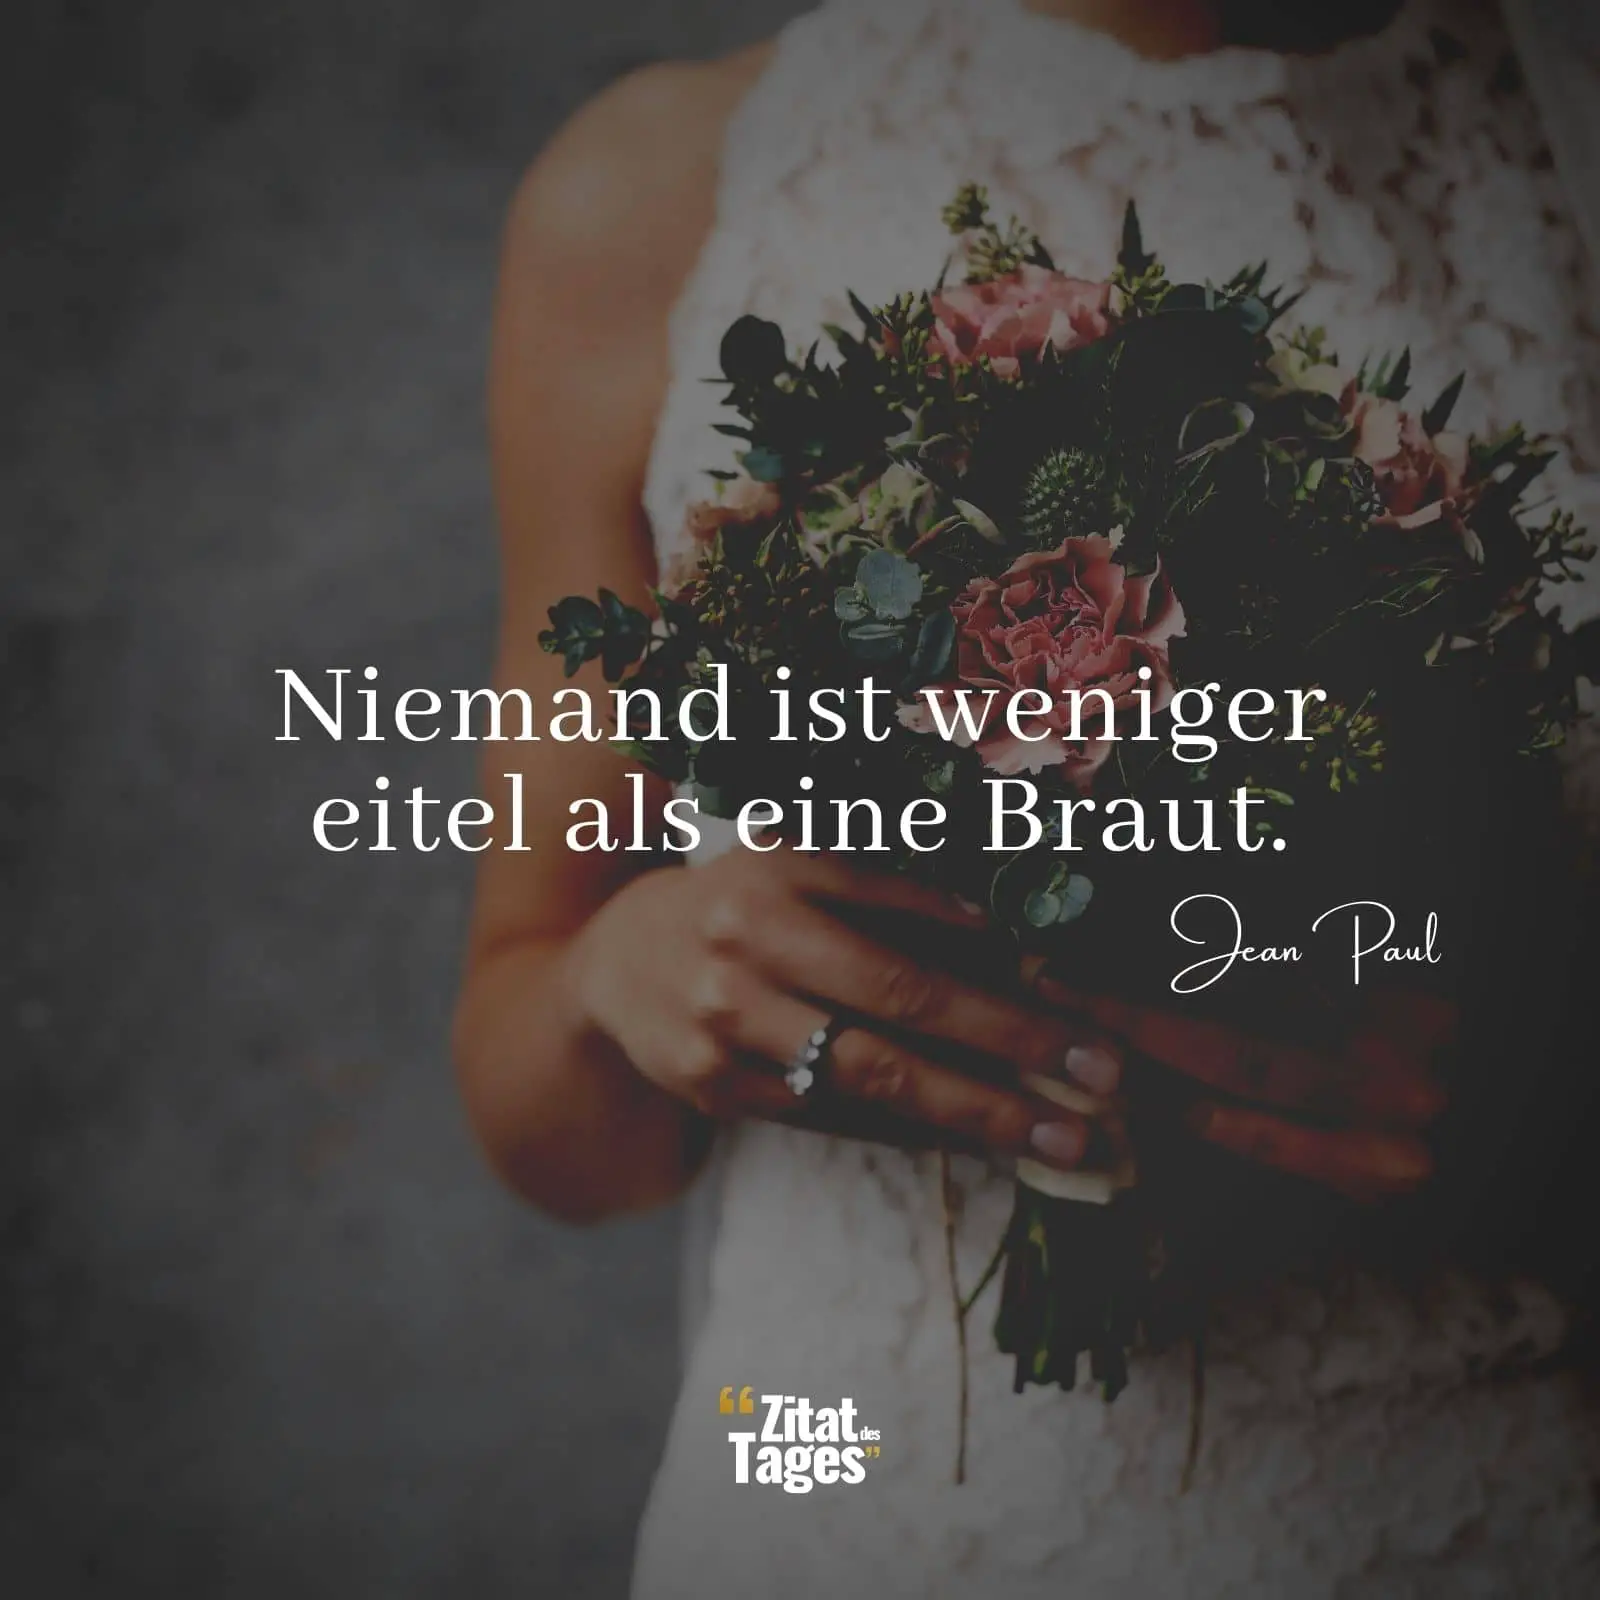 Niemand ist weniger eitel als eine Braut. - Jean Paul